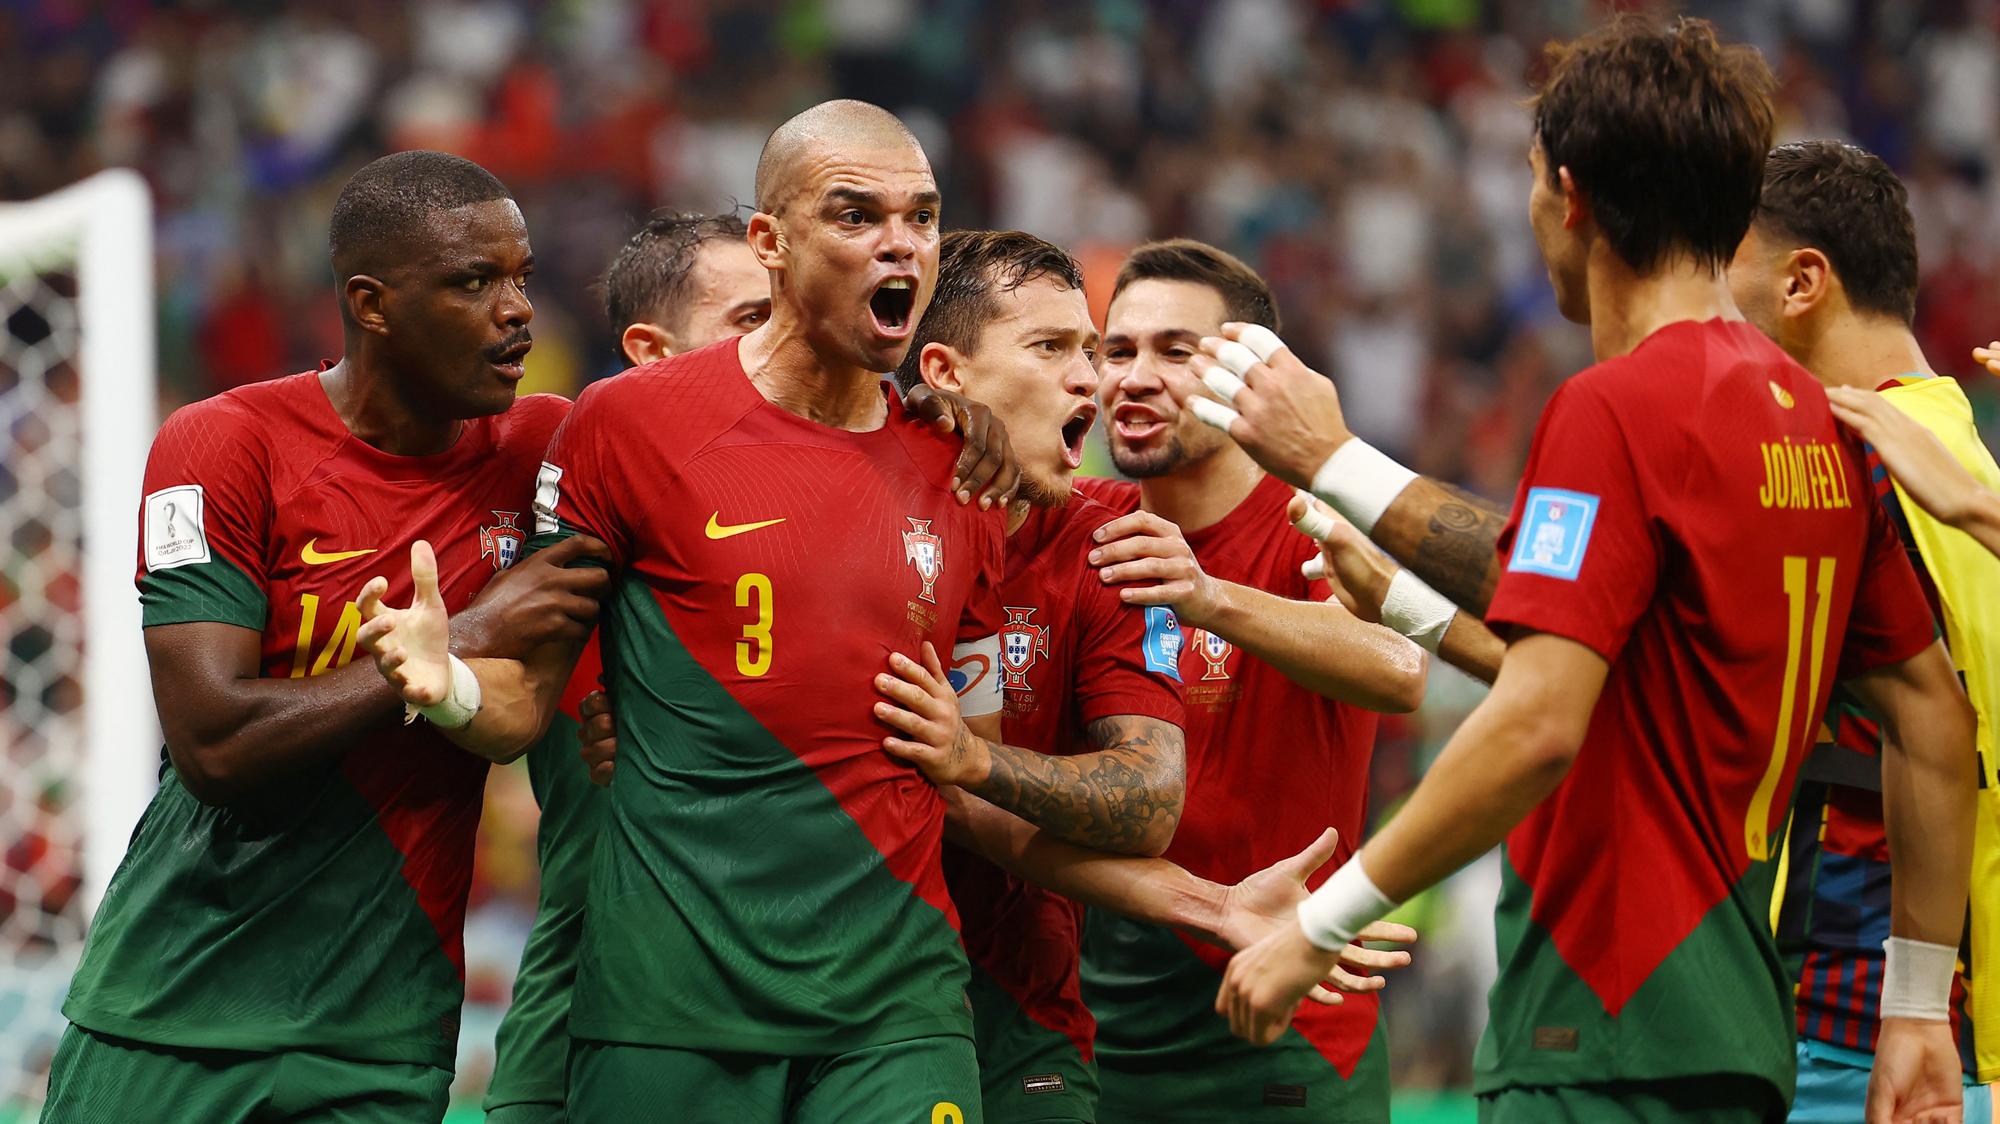 Analýza zápasu Maroko – Portugalsko: Prepracovaná defenzíva na vymakaný  útok nepostačí